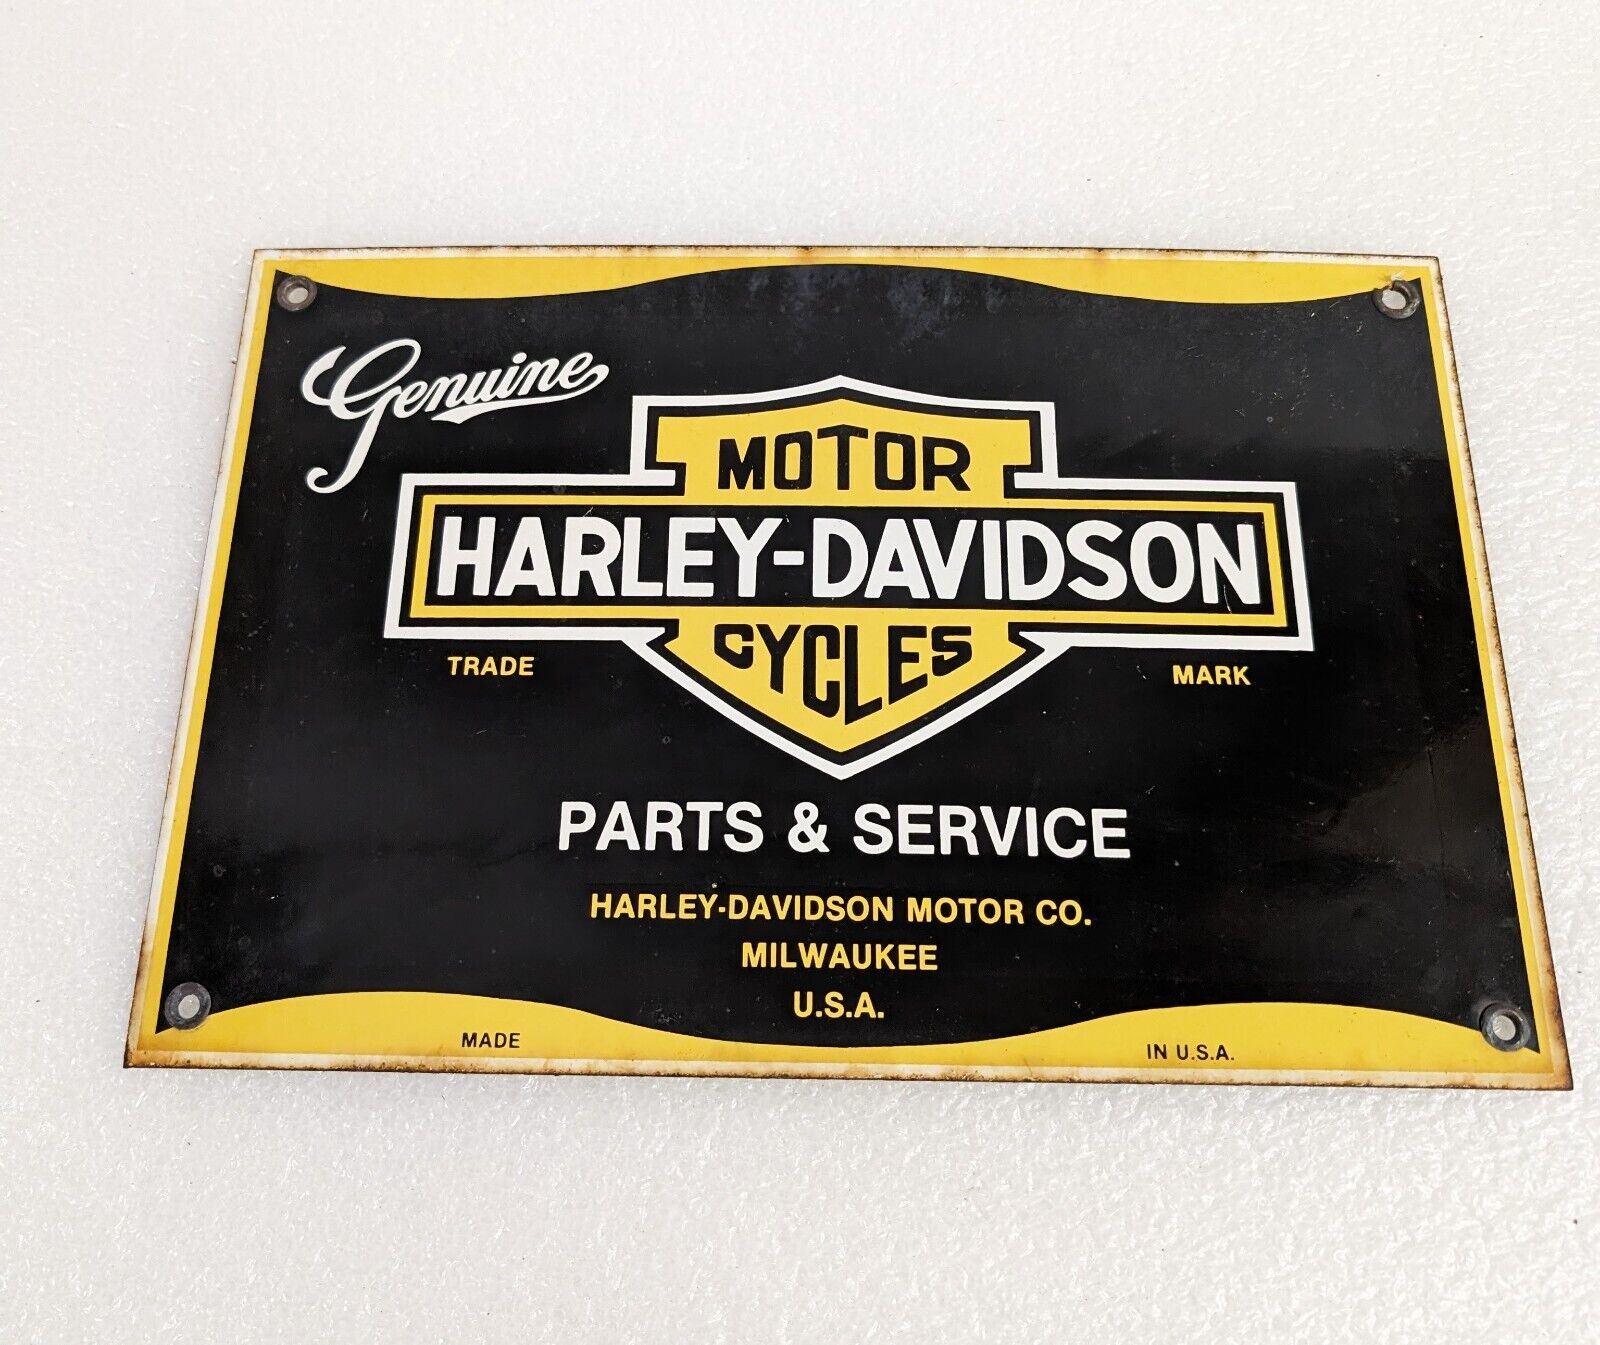 VINTAGE HARLEY DAVIDSON MOTORCYCLE PORCELAIN SIGN GAS OIL BIKER PARTS & SERVICE